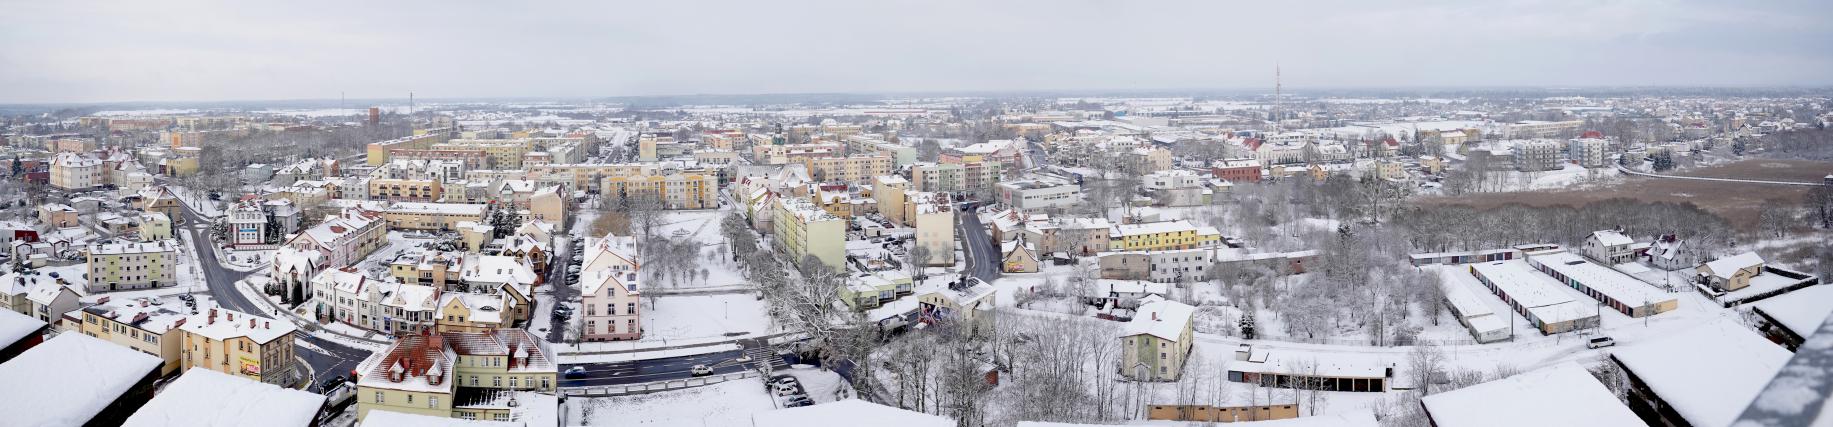 Zimowa panorama miasta